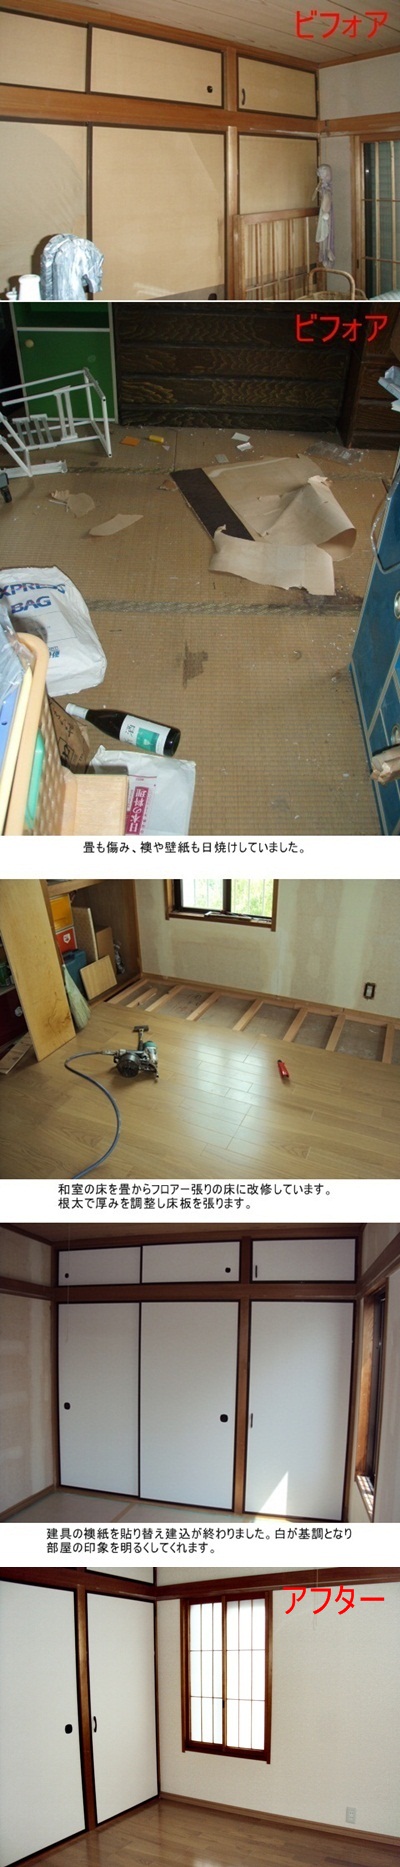 和室の床をフロアー貼りとし、壁のクロスを貼り替えました。襖も貼り替え、明るく使い易い部屋になりました。